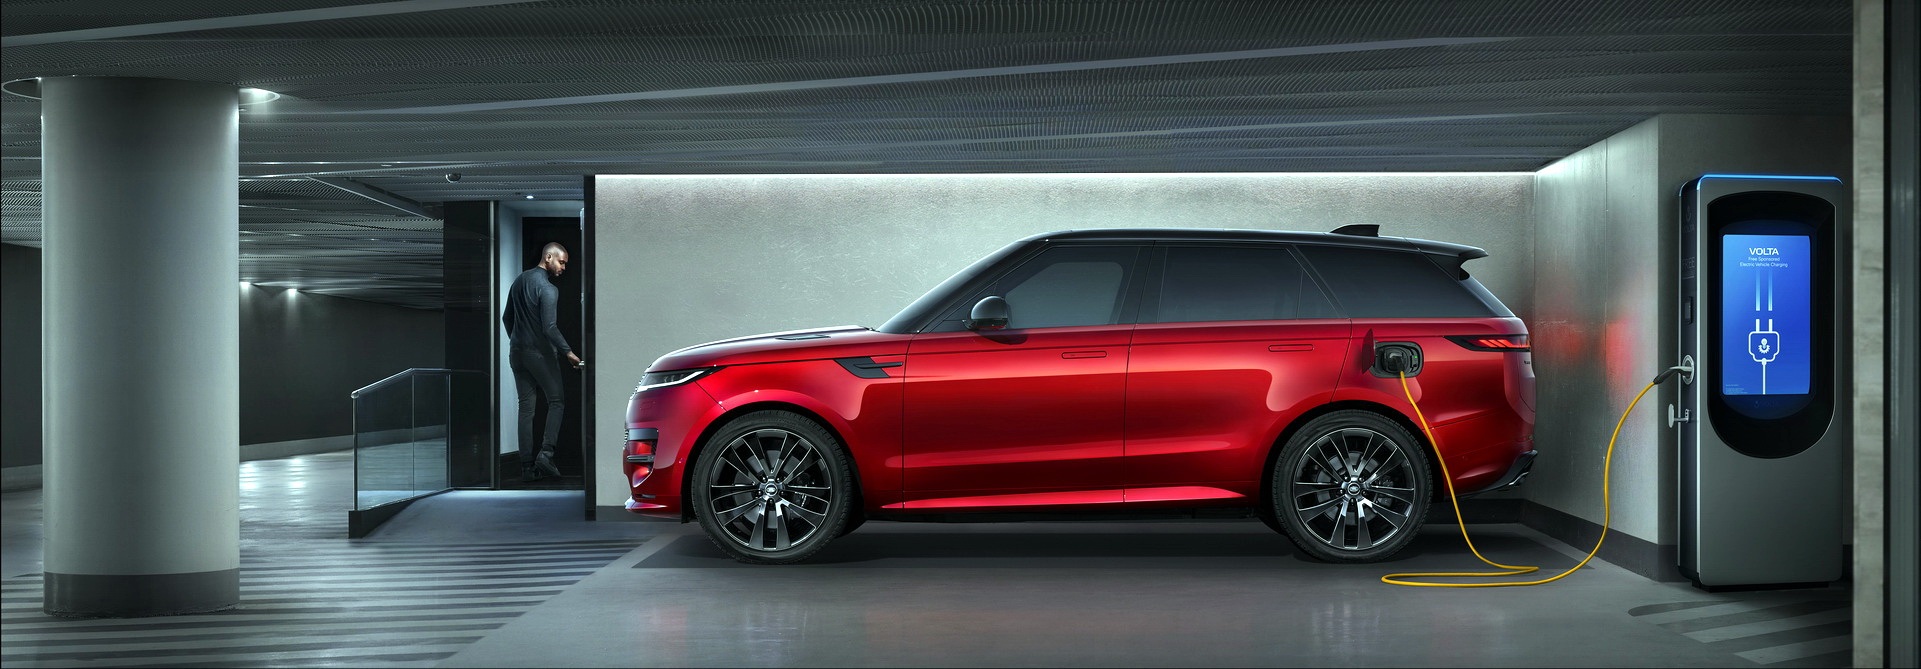 Range Rover Sport mới ra mắt bằng màn trình diễn ngoạn mục - 20